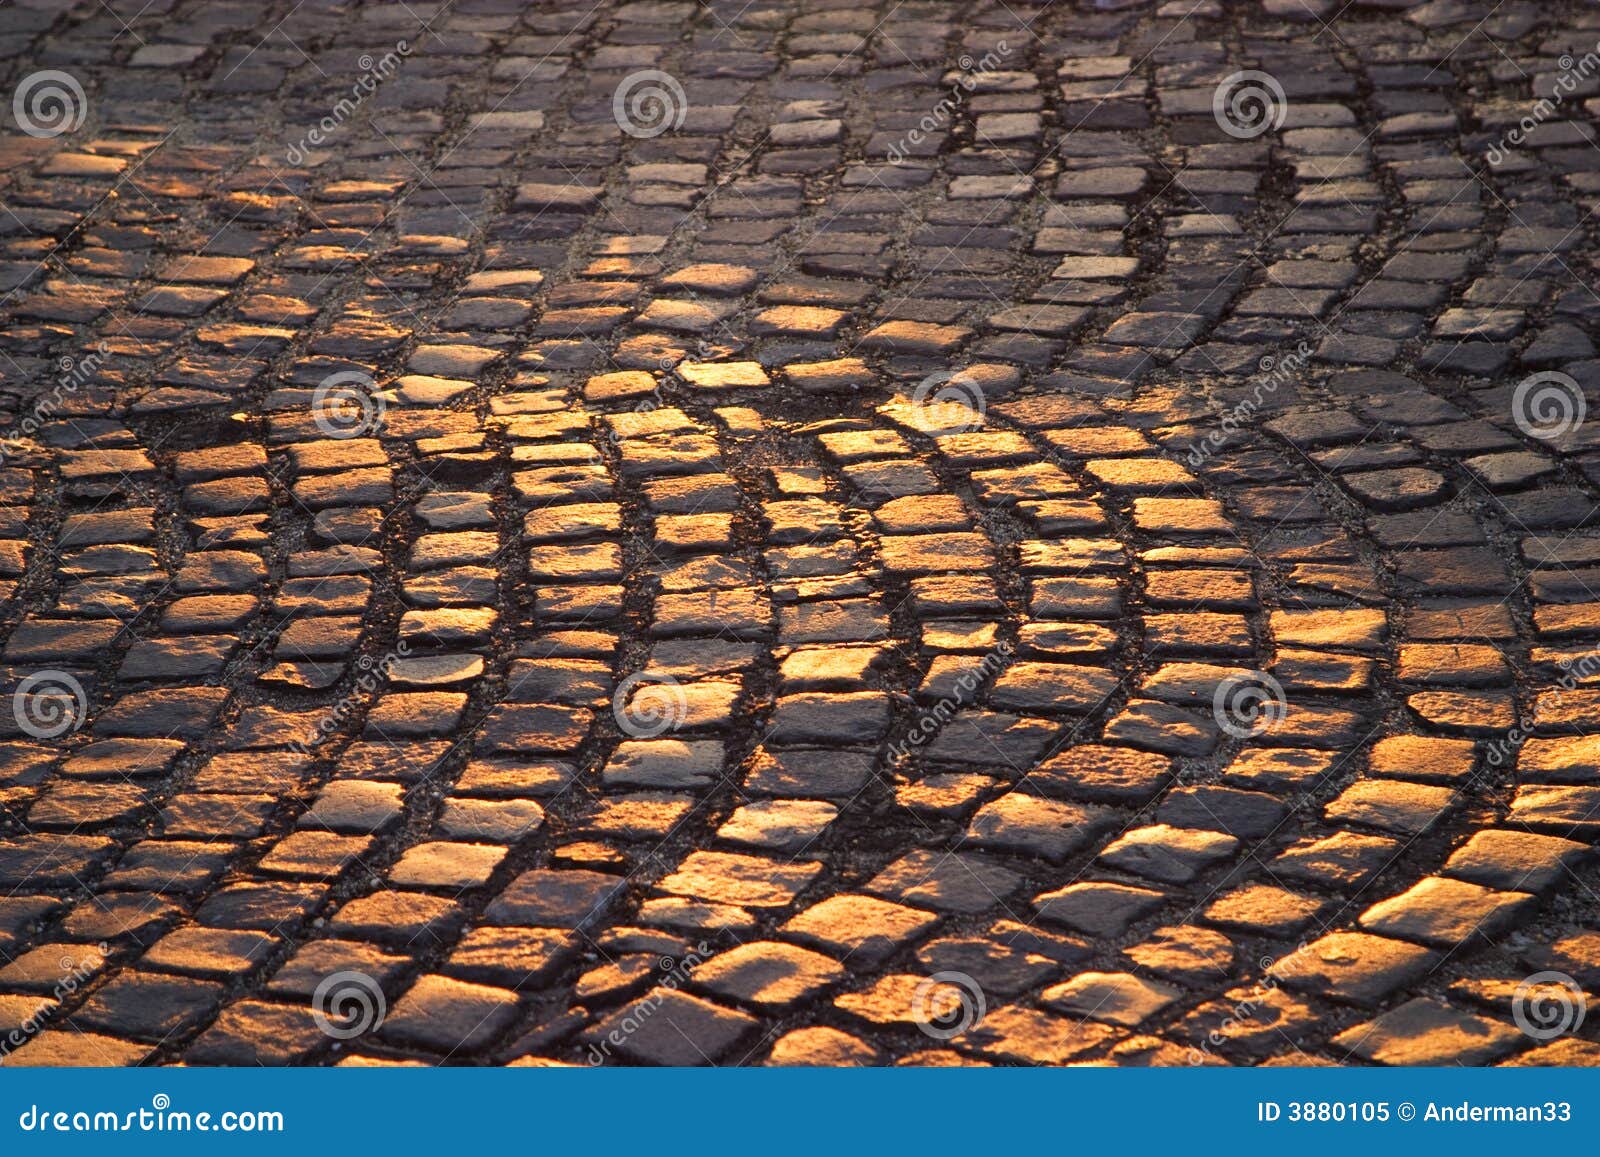 Cobblestones do castelo de Buda. O sol da noite reflete fora dos cobblestones no castelo de Buda, Hungria.